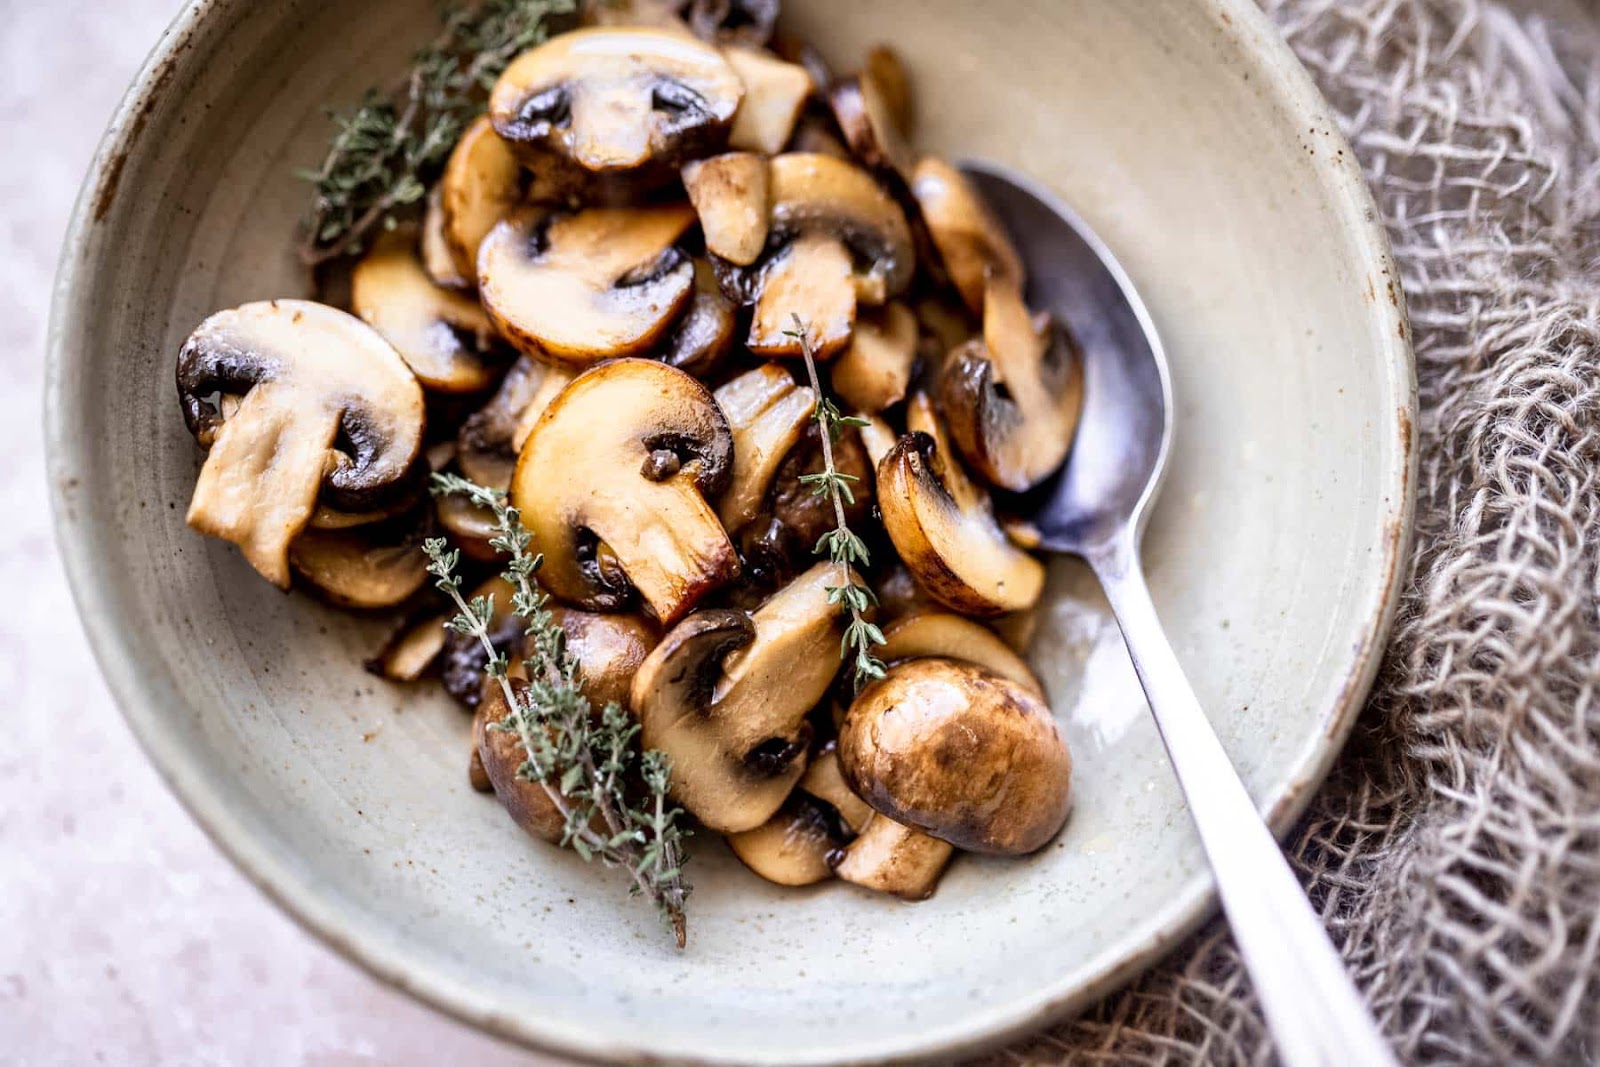 Tasty Vegetable Side Dishes - mushrooms